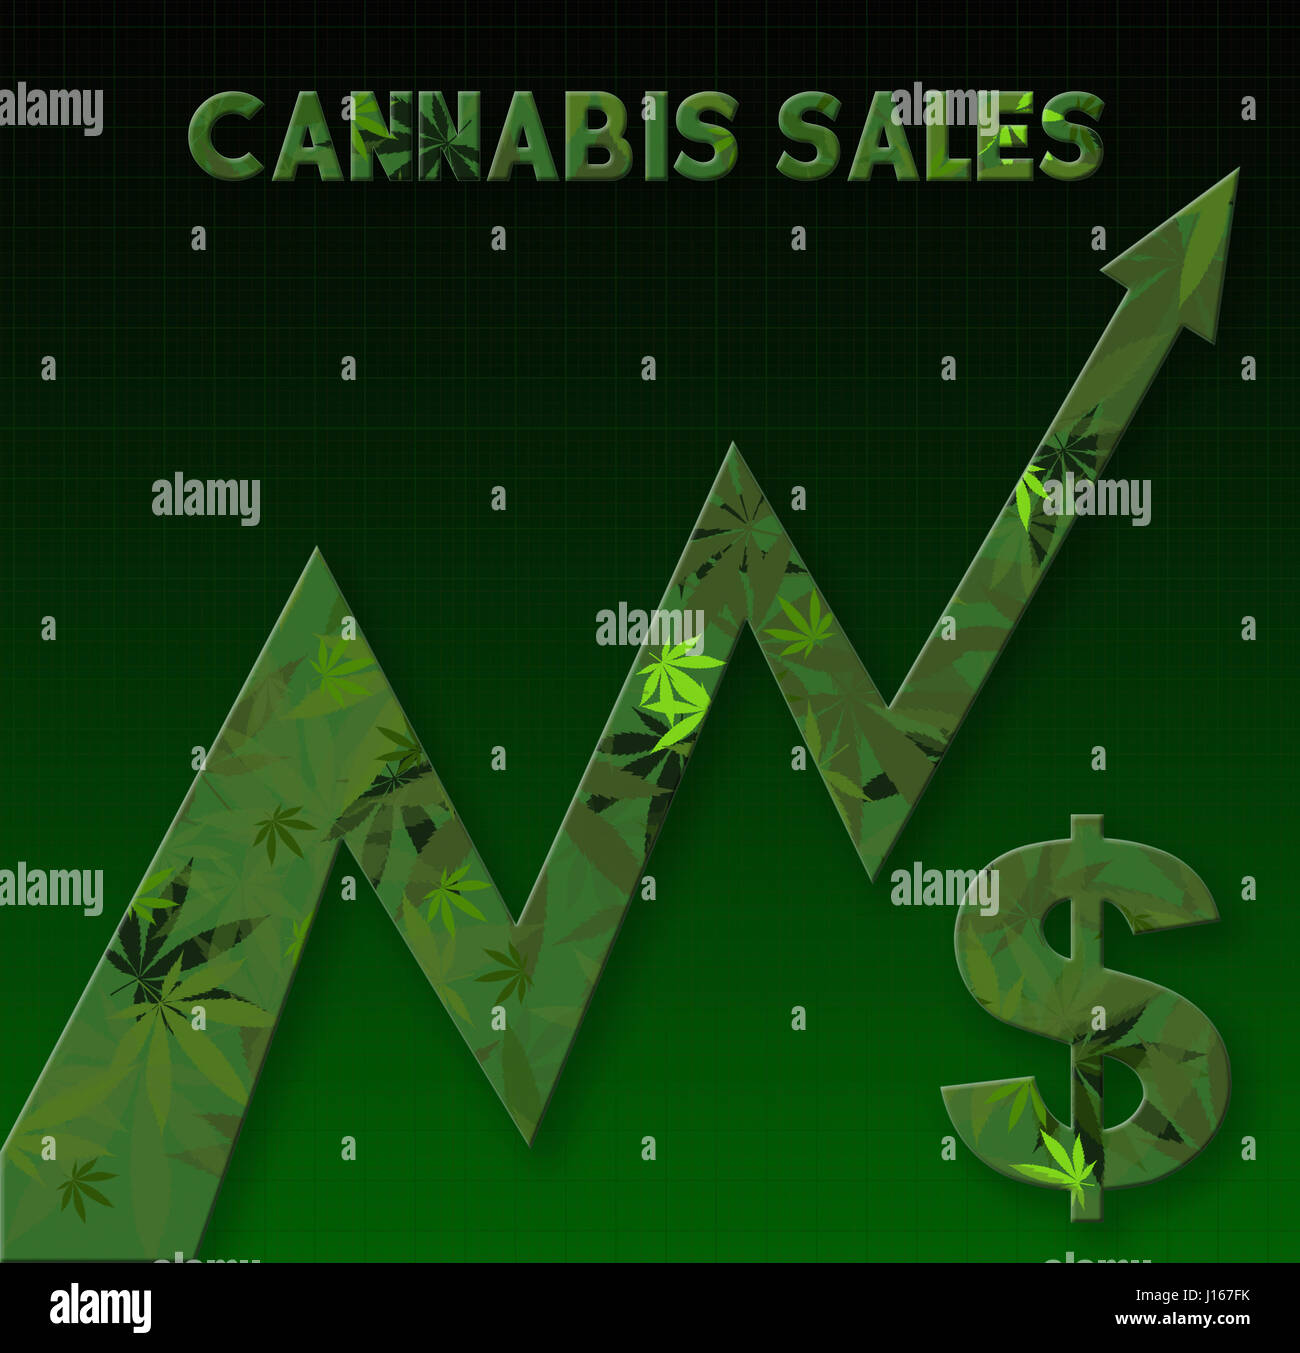 La Cannabis grafico delle vendite che mostra un aumento delle vendite Foto Stock